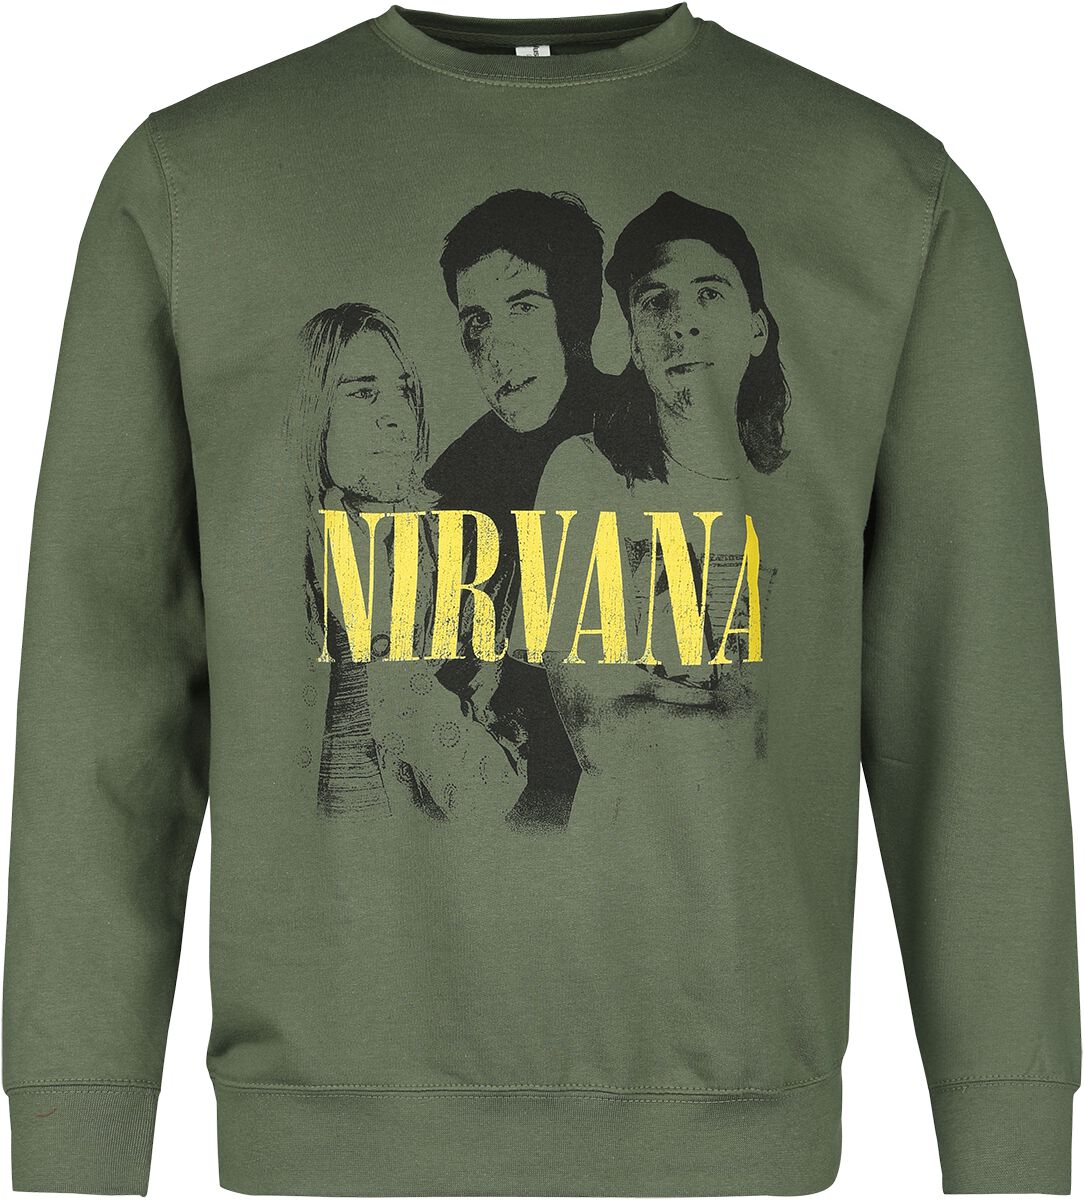 Nirvana Langarmshirt - Photo - S bis XXL - für Männer - Größe S - grün  - Lizenziertes Merchandise!